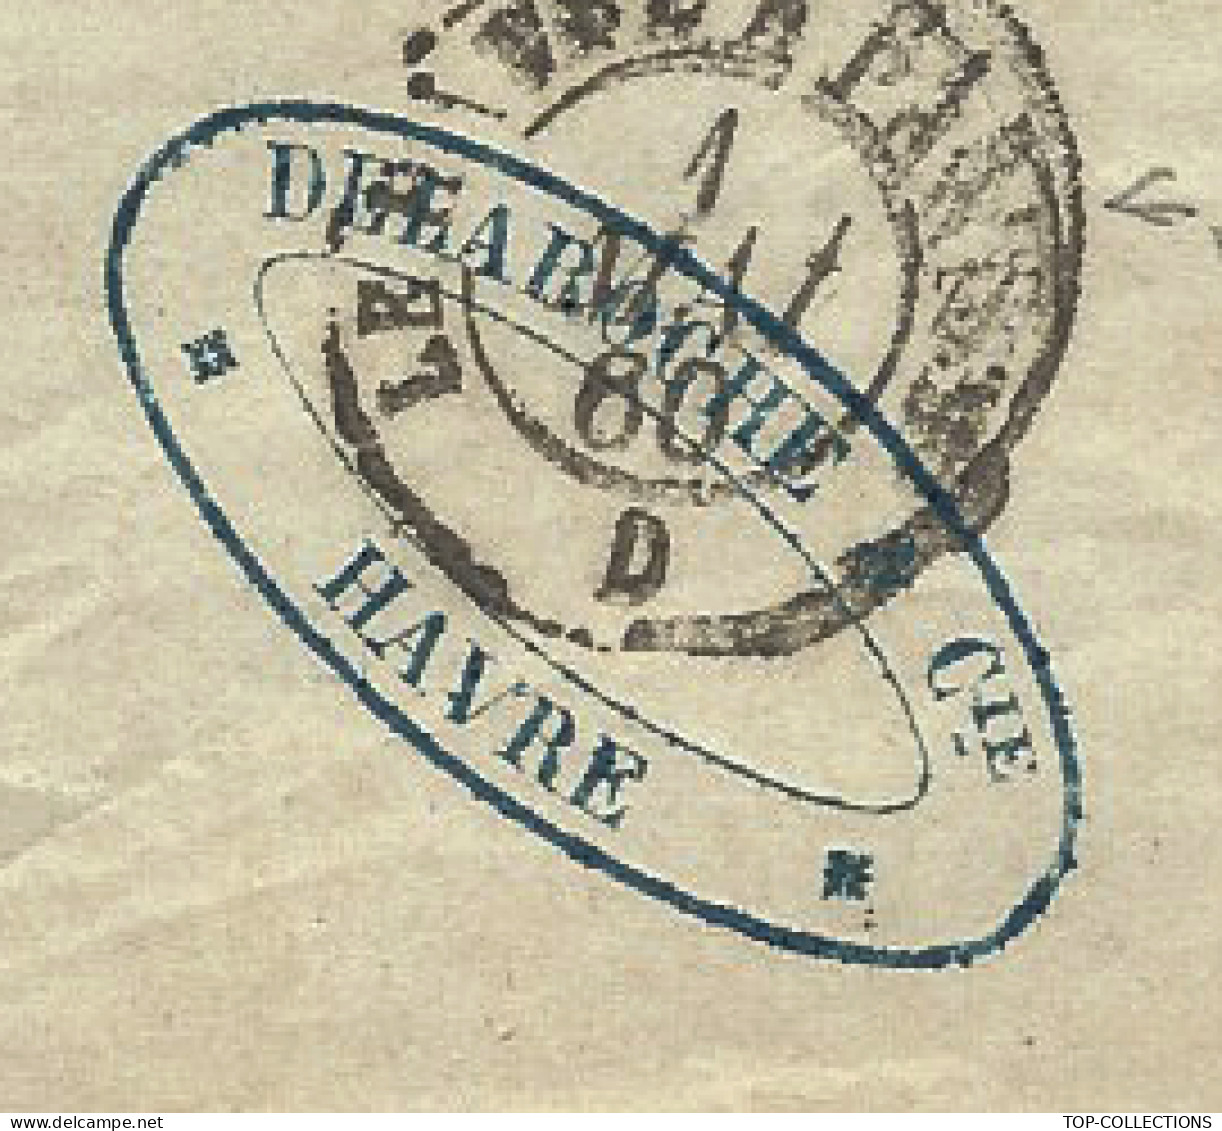 1860 LETTRE de Laroche Le Havre « DELAROCHE & Cie » pour Delaroche chez Baronne Oberkampf Paris  V. HISTORIQUE